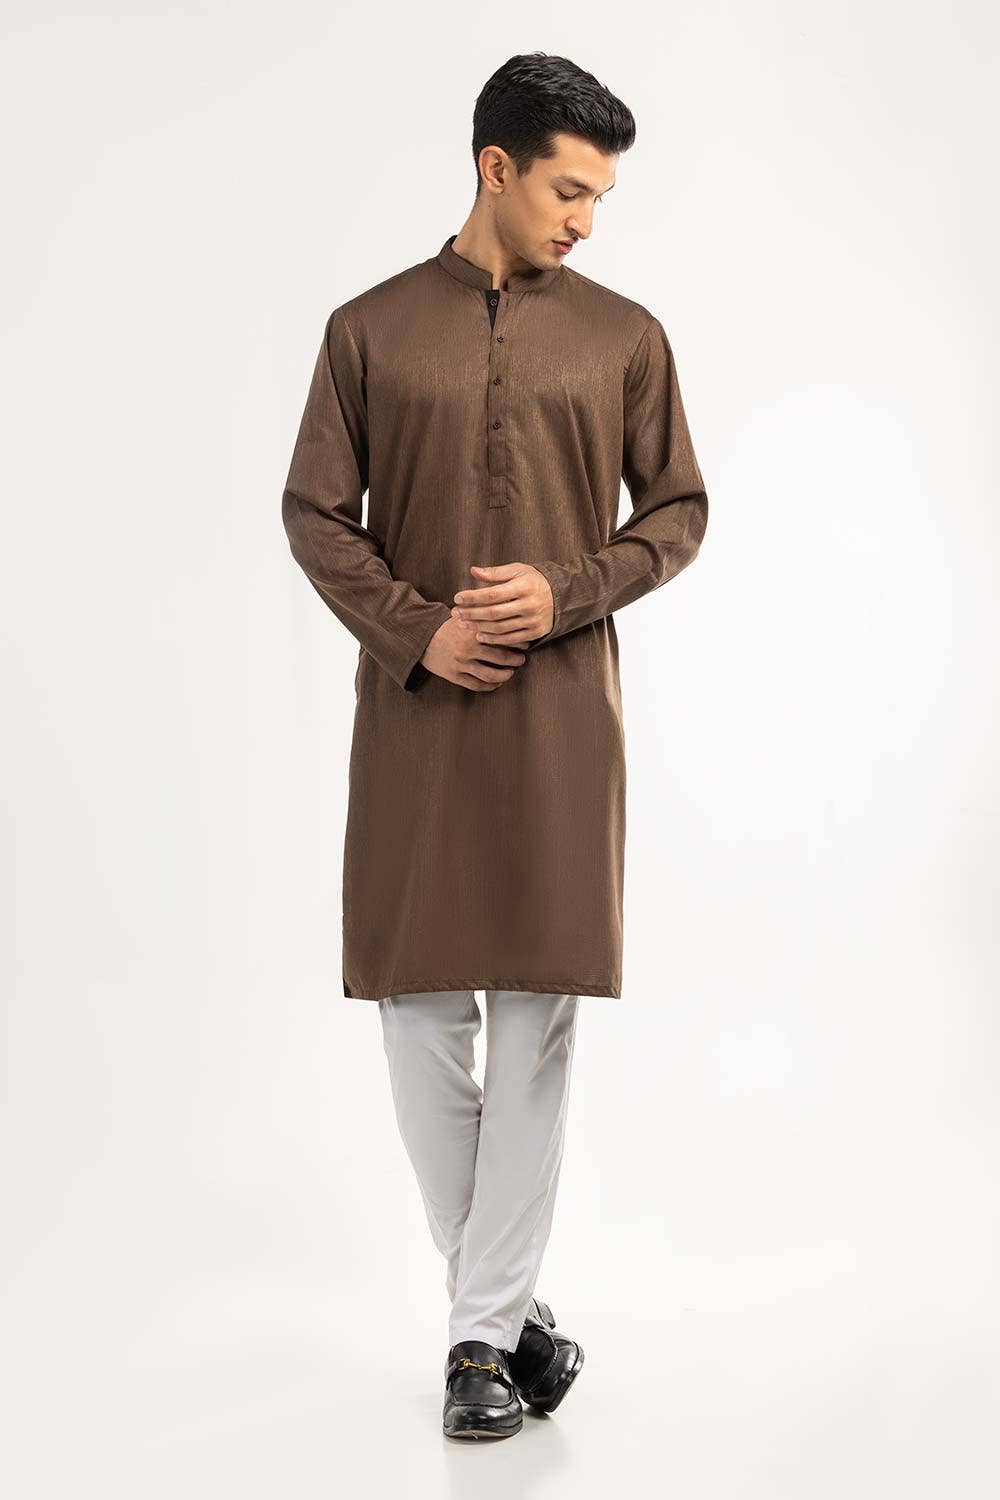 Gul Ahmed Ready to Wear Mahogany Basic Kurta KR-STY-007